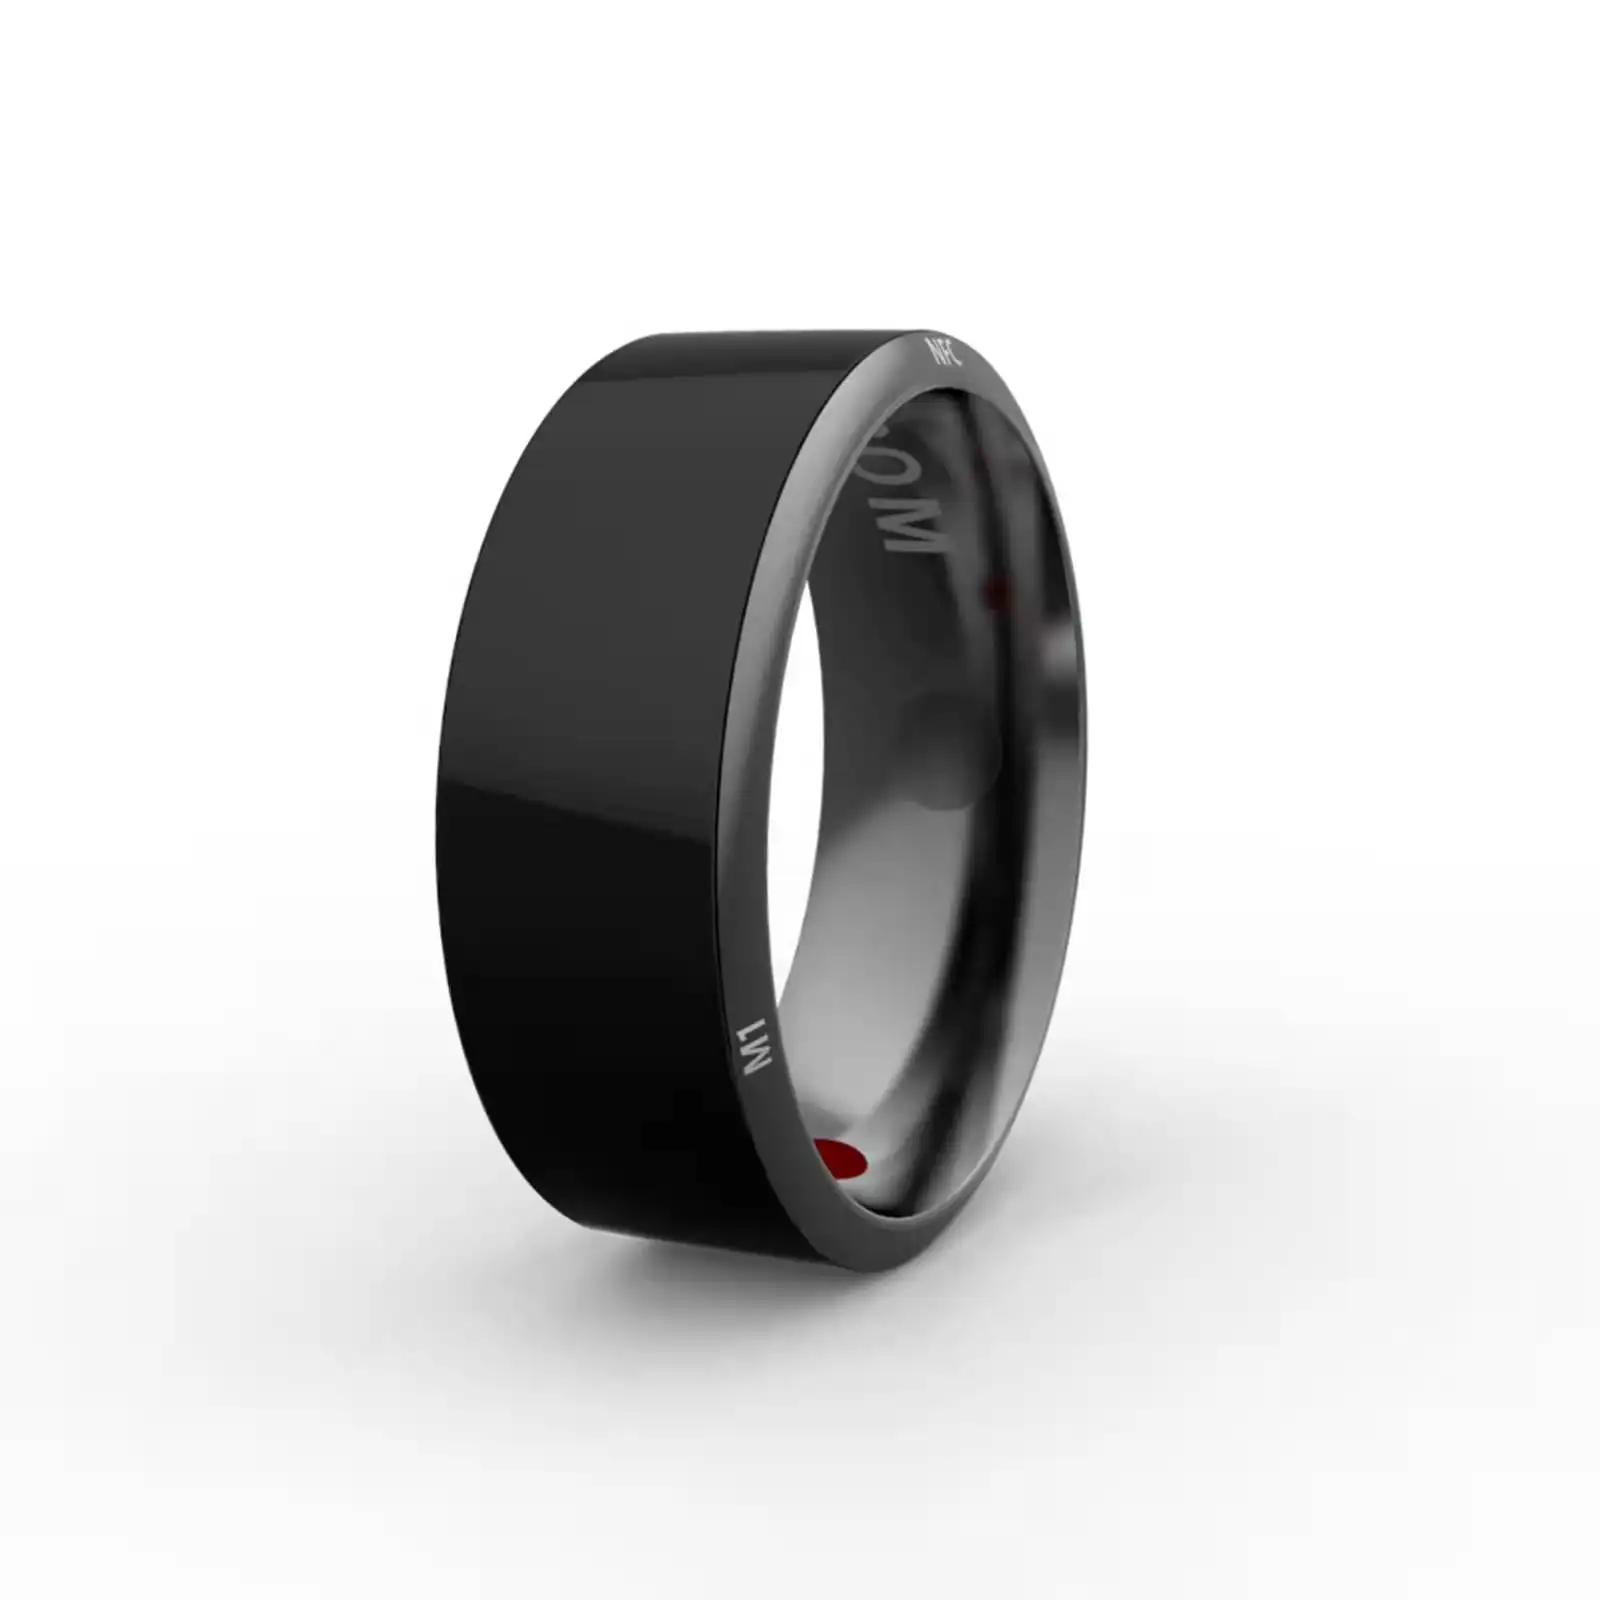 Hochwertiger R3 Smart Ring für iPhone und für Android tragbares Gerät für Unterhaltung elektronik Ring mit Pokeball Soulmate